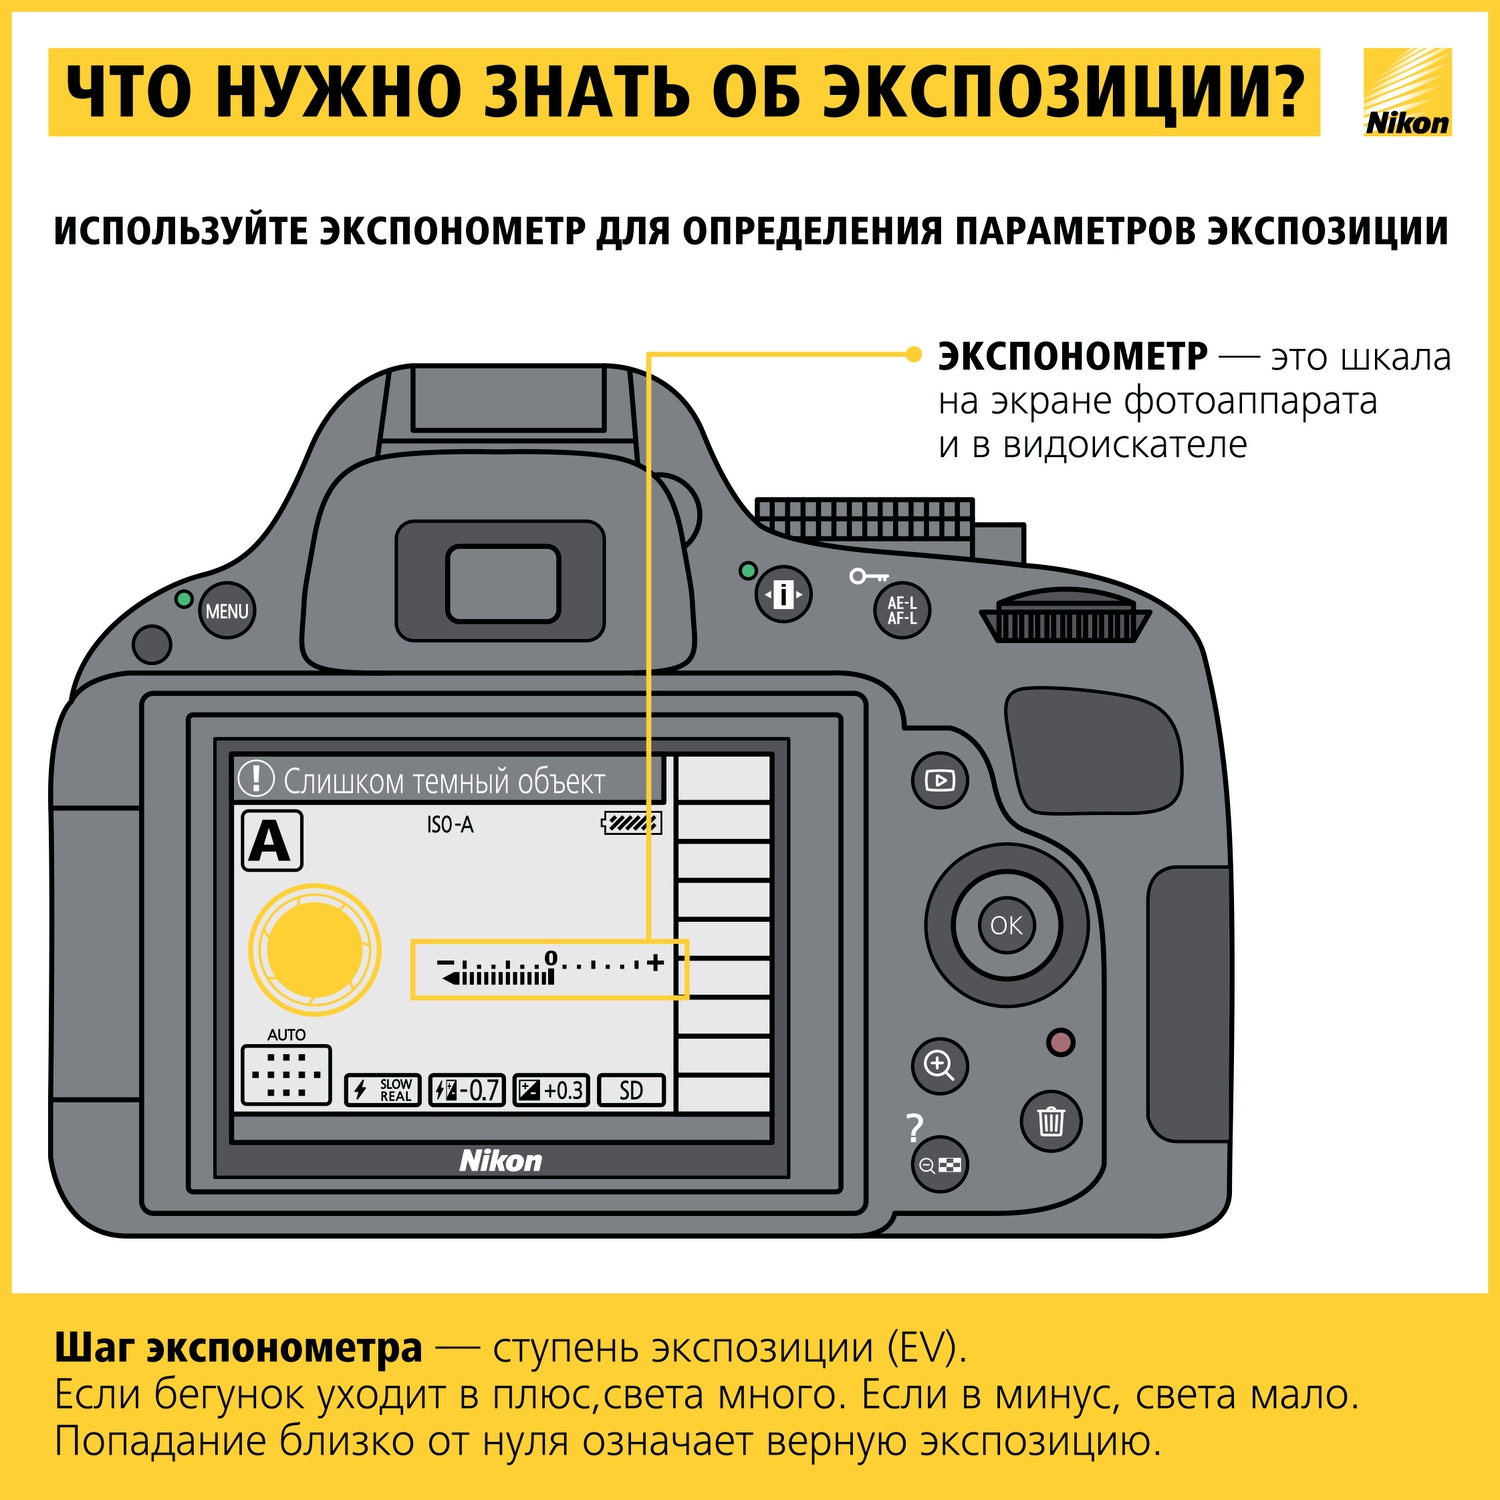 Как научиться фотографировать: пошаговая инструкция от Nikon Info_nikon_03